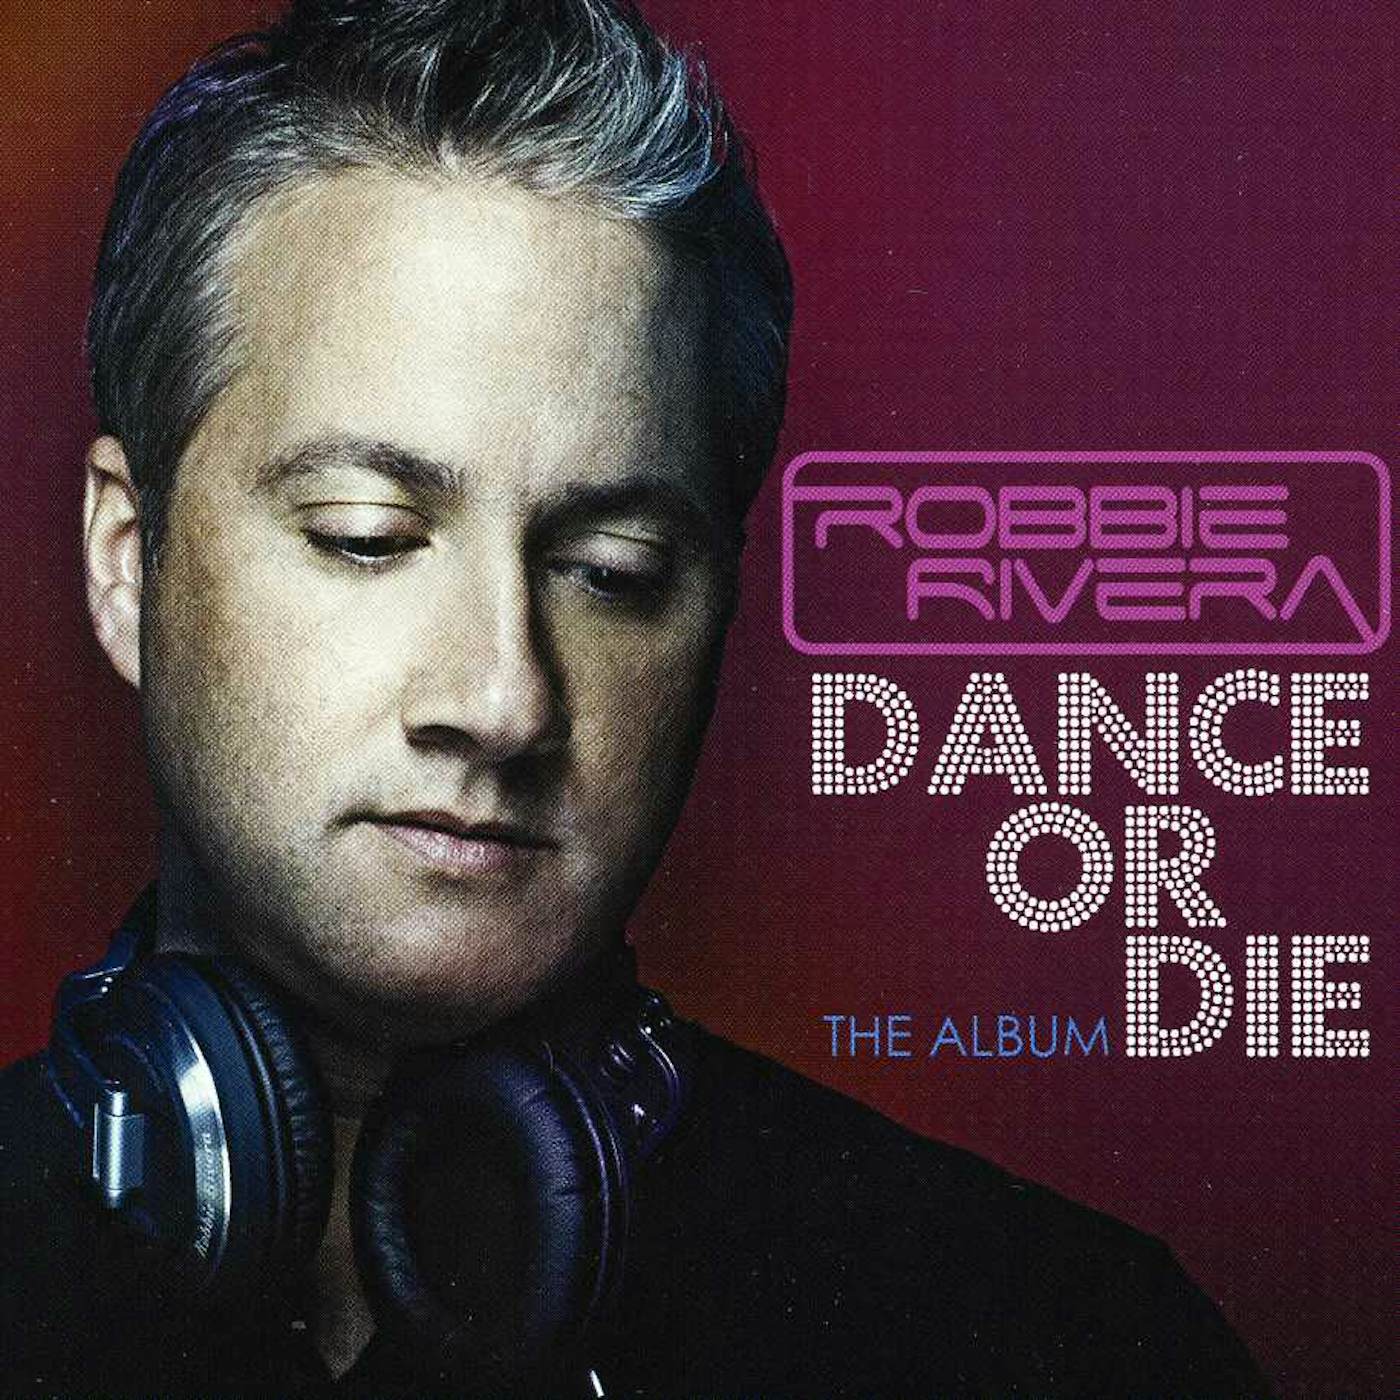 Robbie Rivera DANCE OR DIE CD